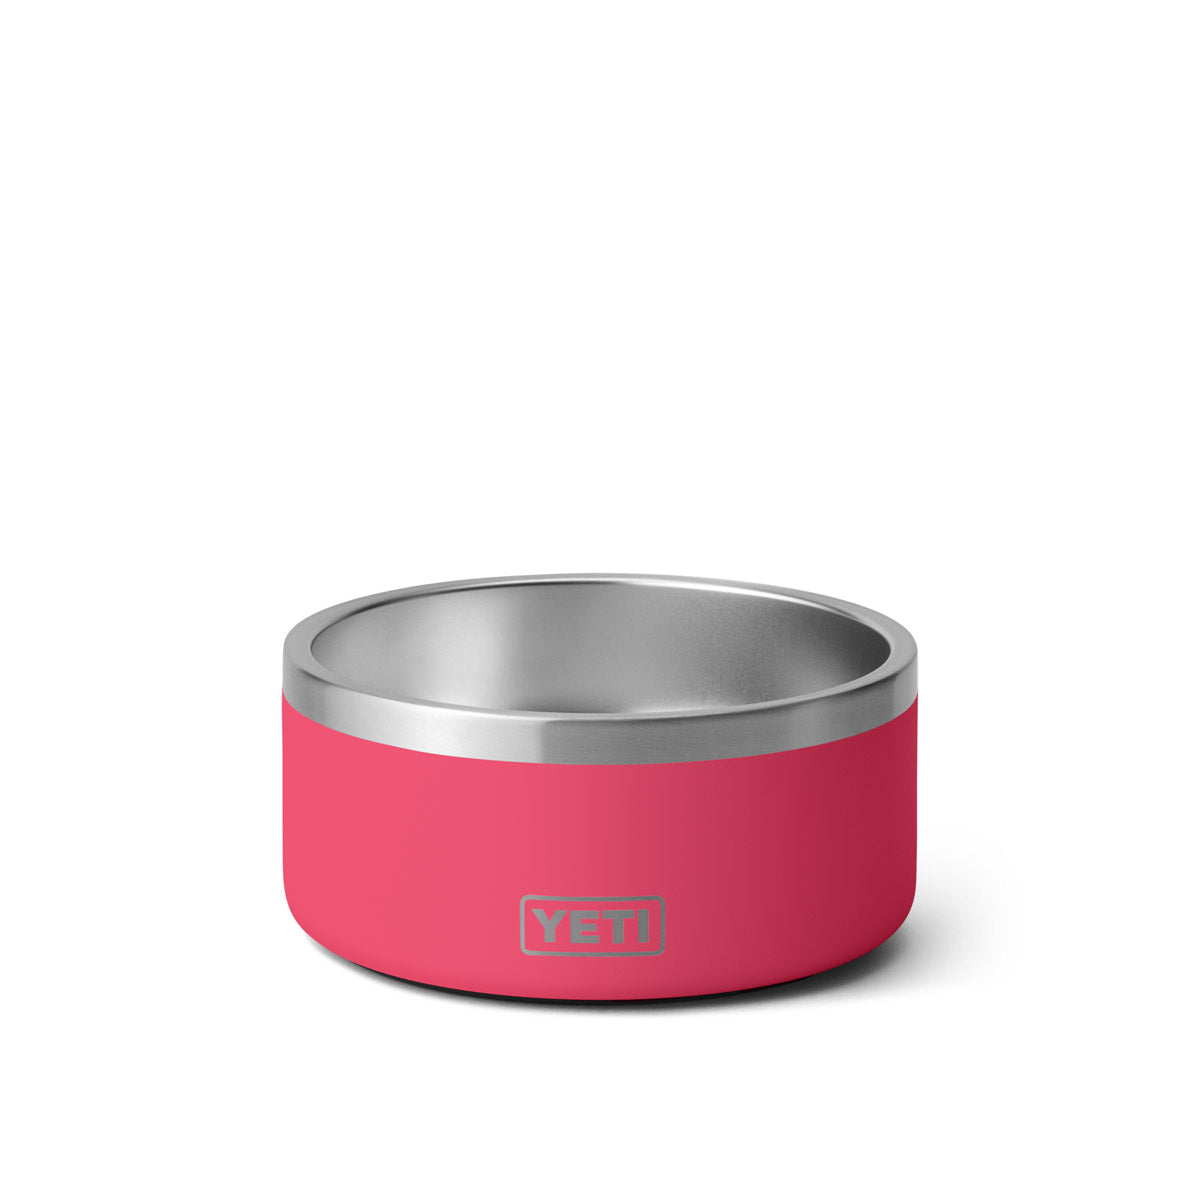 Yeti Boomer 8 Cup Dog Bowl-Black-Stainless-Bimini Pink